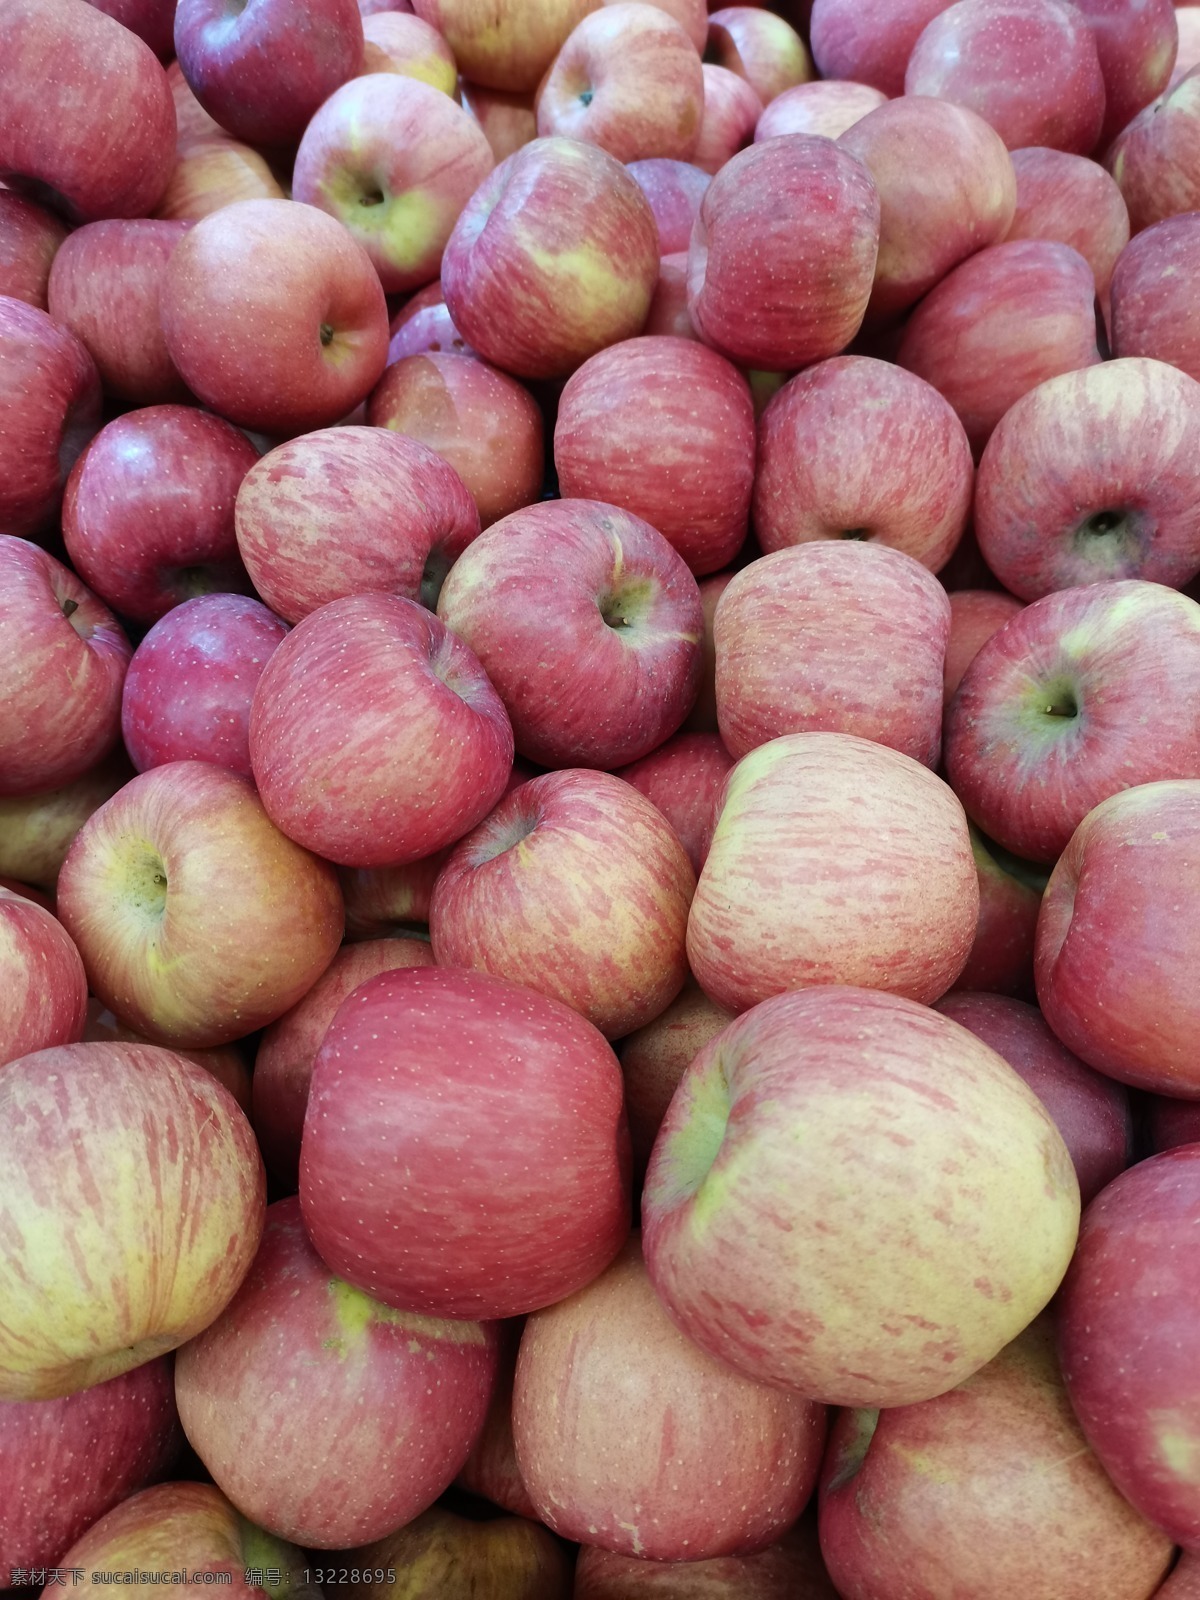 苹果图片 苹果 红苹果 圣诞节 平安果 水果 超市 零售 果子 红色 维生素 健康 美味 甜 生物世界